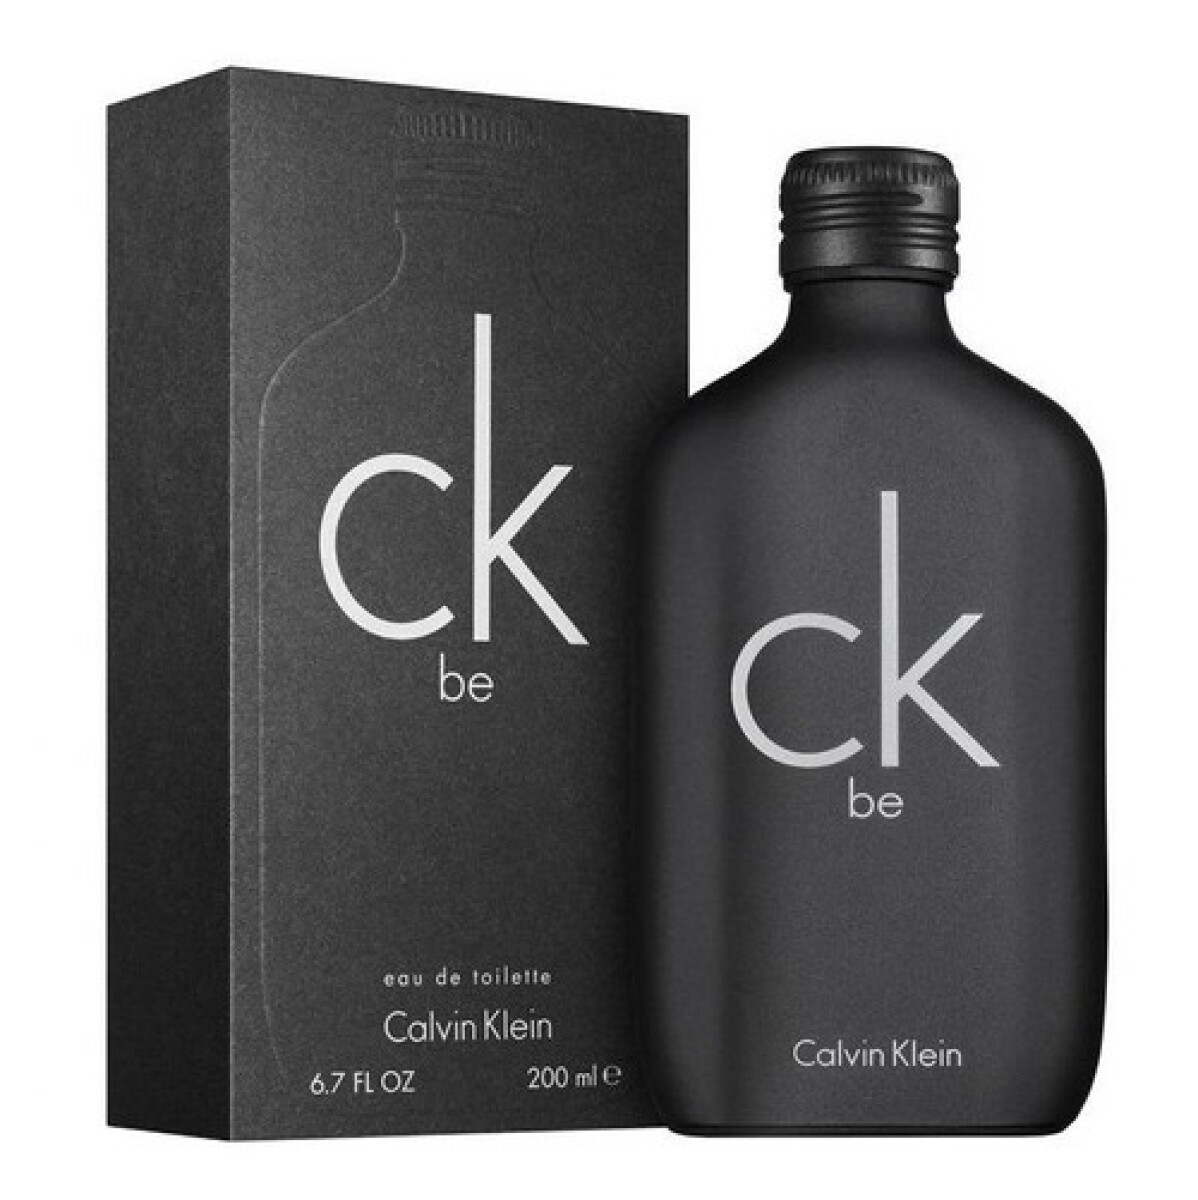 Perfume Ck Be Edt Calvin Klein 200 Ml. 